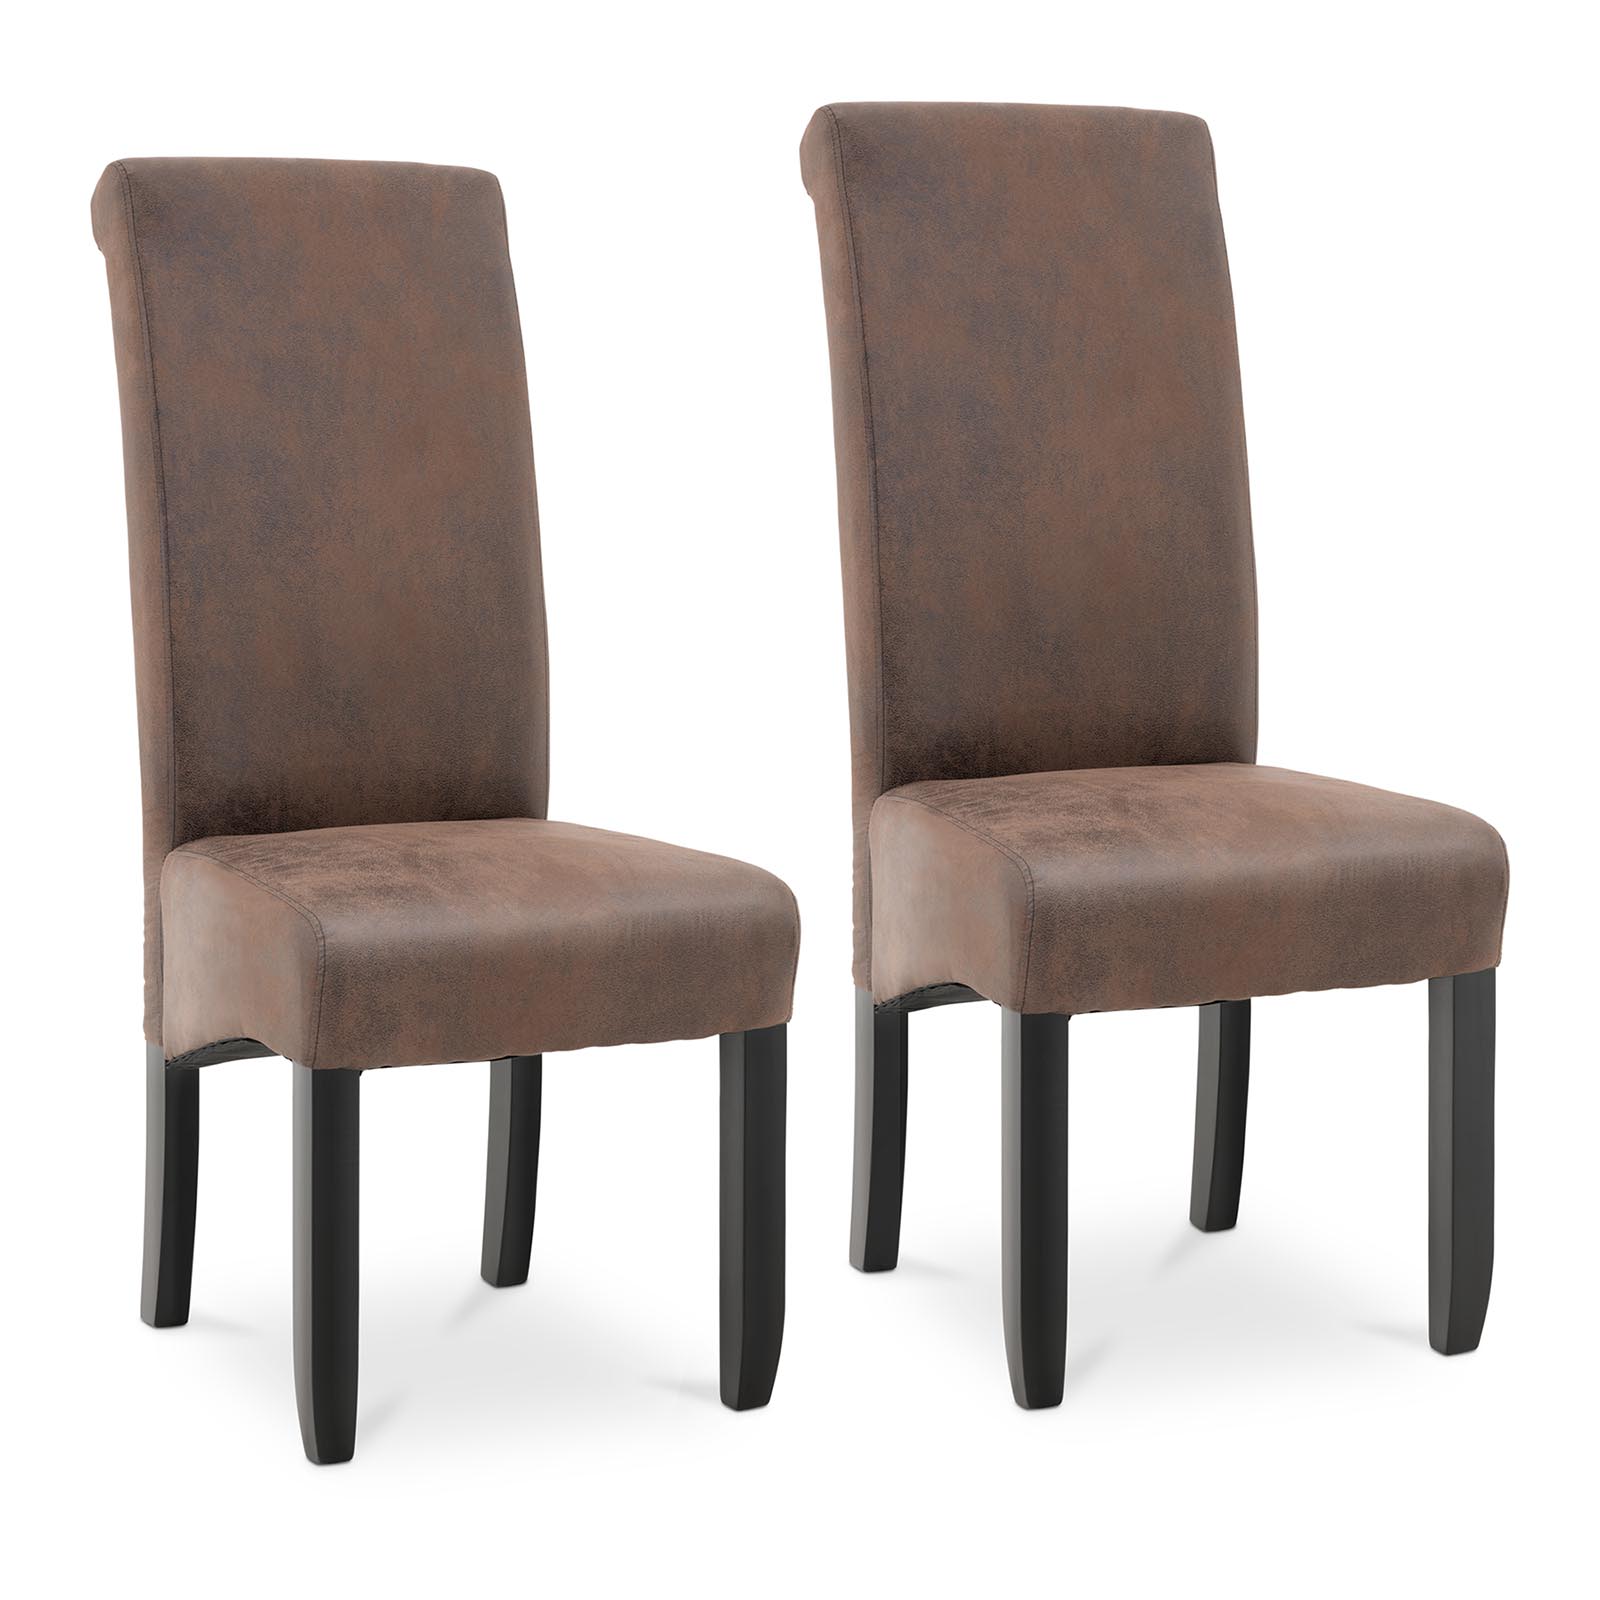 B-zboží Čalouněná židle - sada 2 kusů - do 150 kg - sedací plocha 44,5 x 44 cm - hnědá